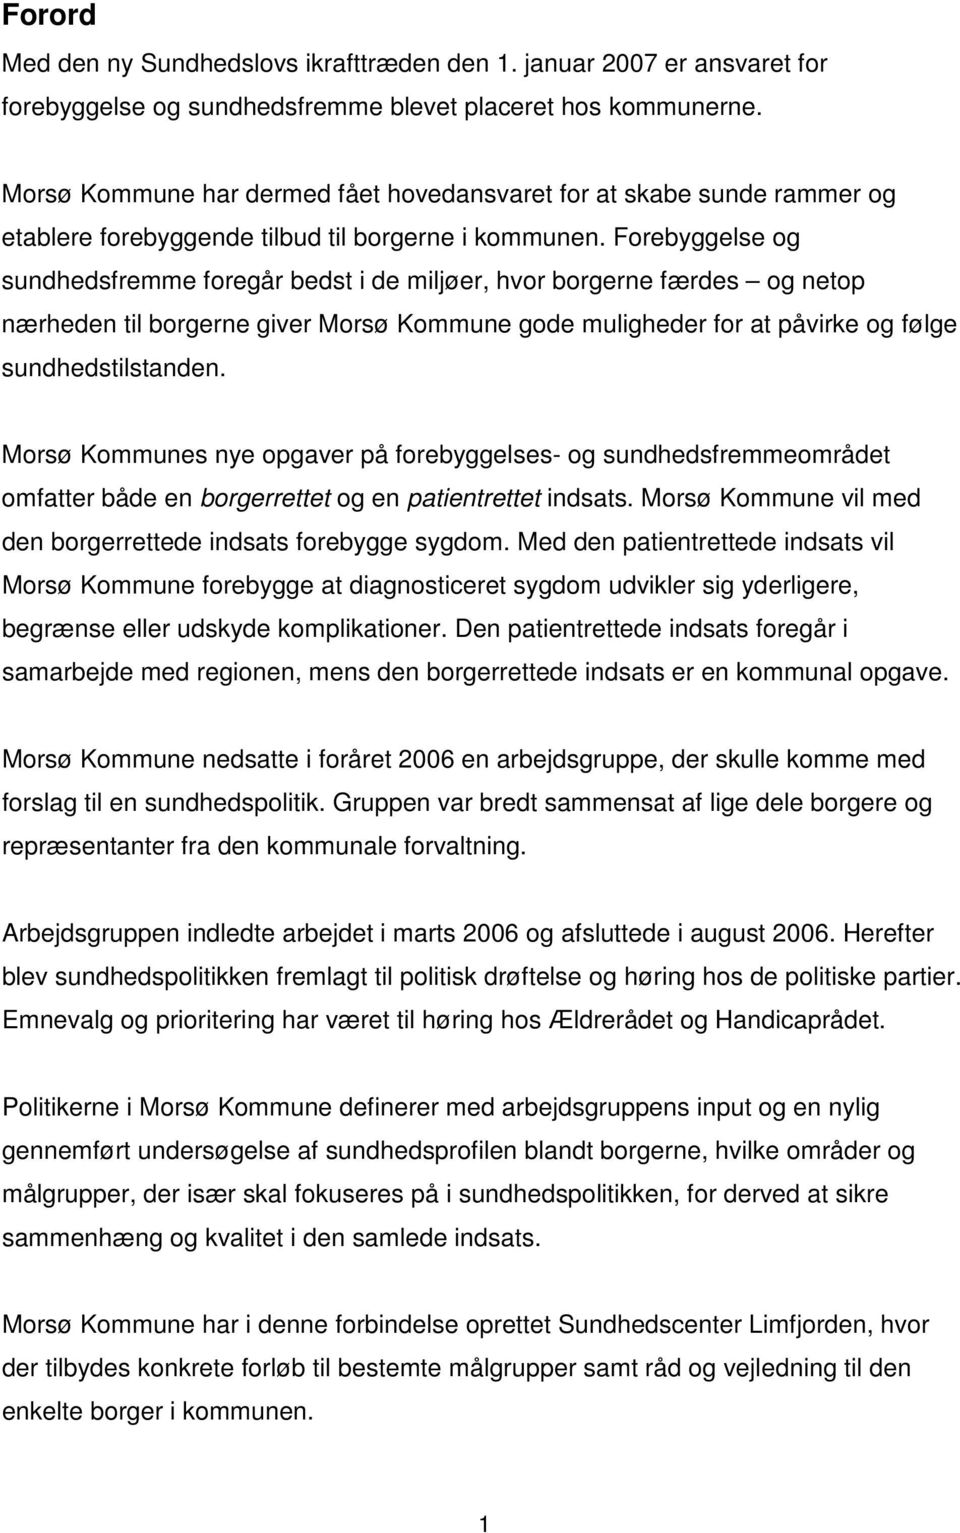 Forebyggelse og sundhedsfremme foregår bedst i de miljøer, hvor borgerne færdes og netop nærheden til borgerne giver Morsø Kommune gode muligheder for at påvirke og følge sundhedstilstanden.